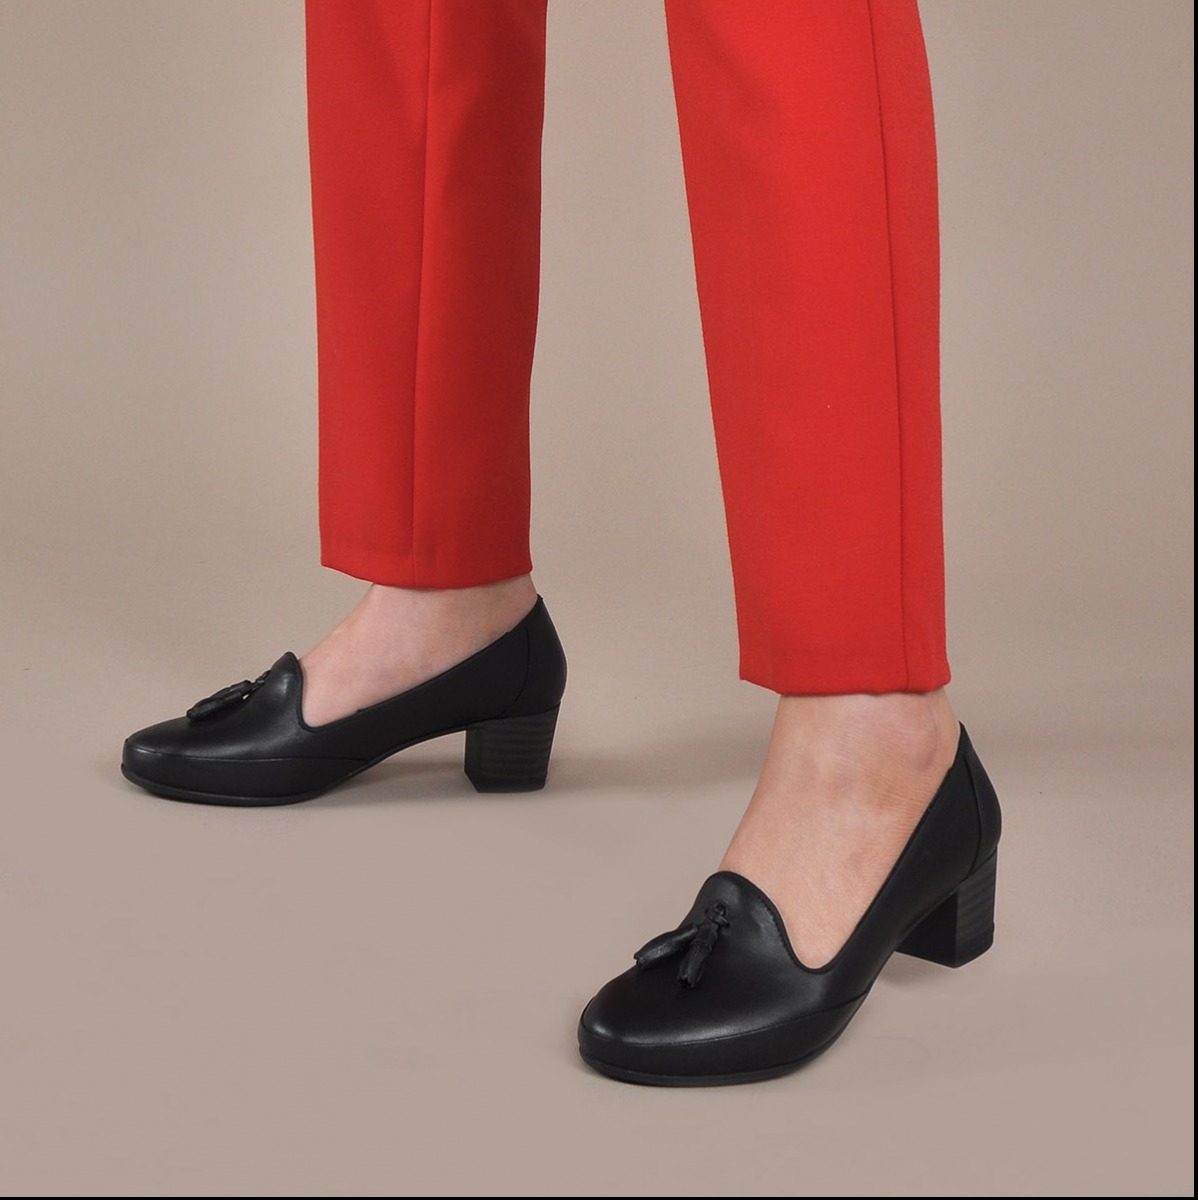 Flo Kadın  Siyah Klasik Topuklu Ayakkabı VZN20-018Y. 1